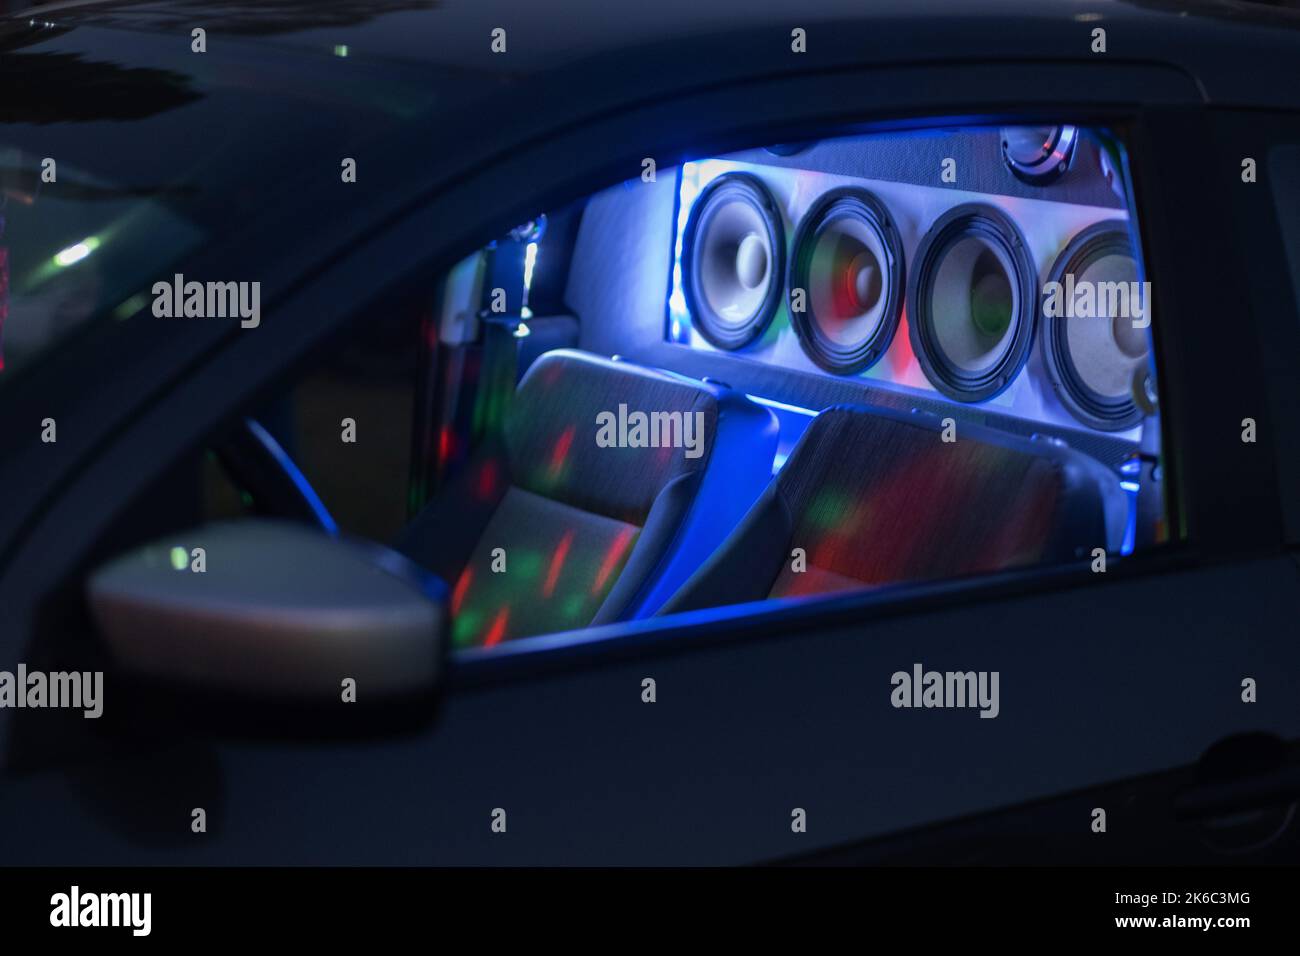 Estéreo y altavoces en un interior iluminado de un coche Foto de stock